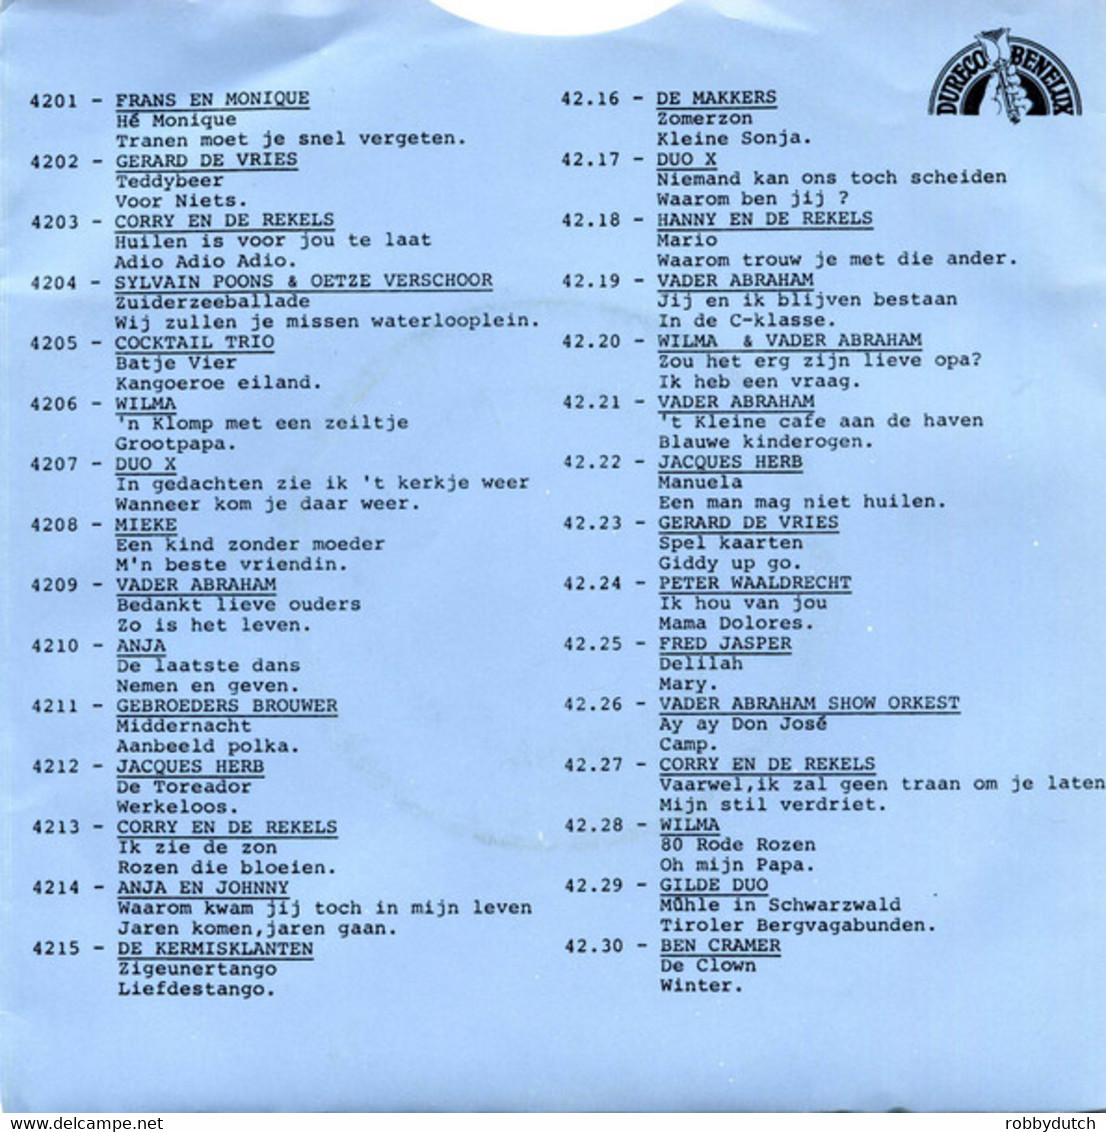 *7" * GERARD DE VRIES - SPEL KAARTEN (Holland 1976) - Other - Dutch Music